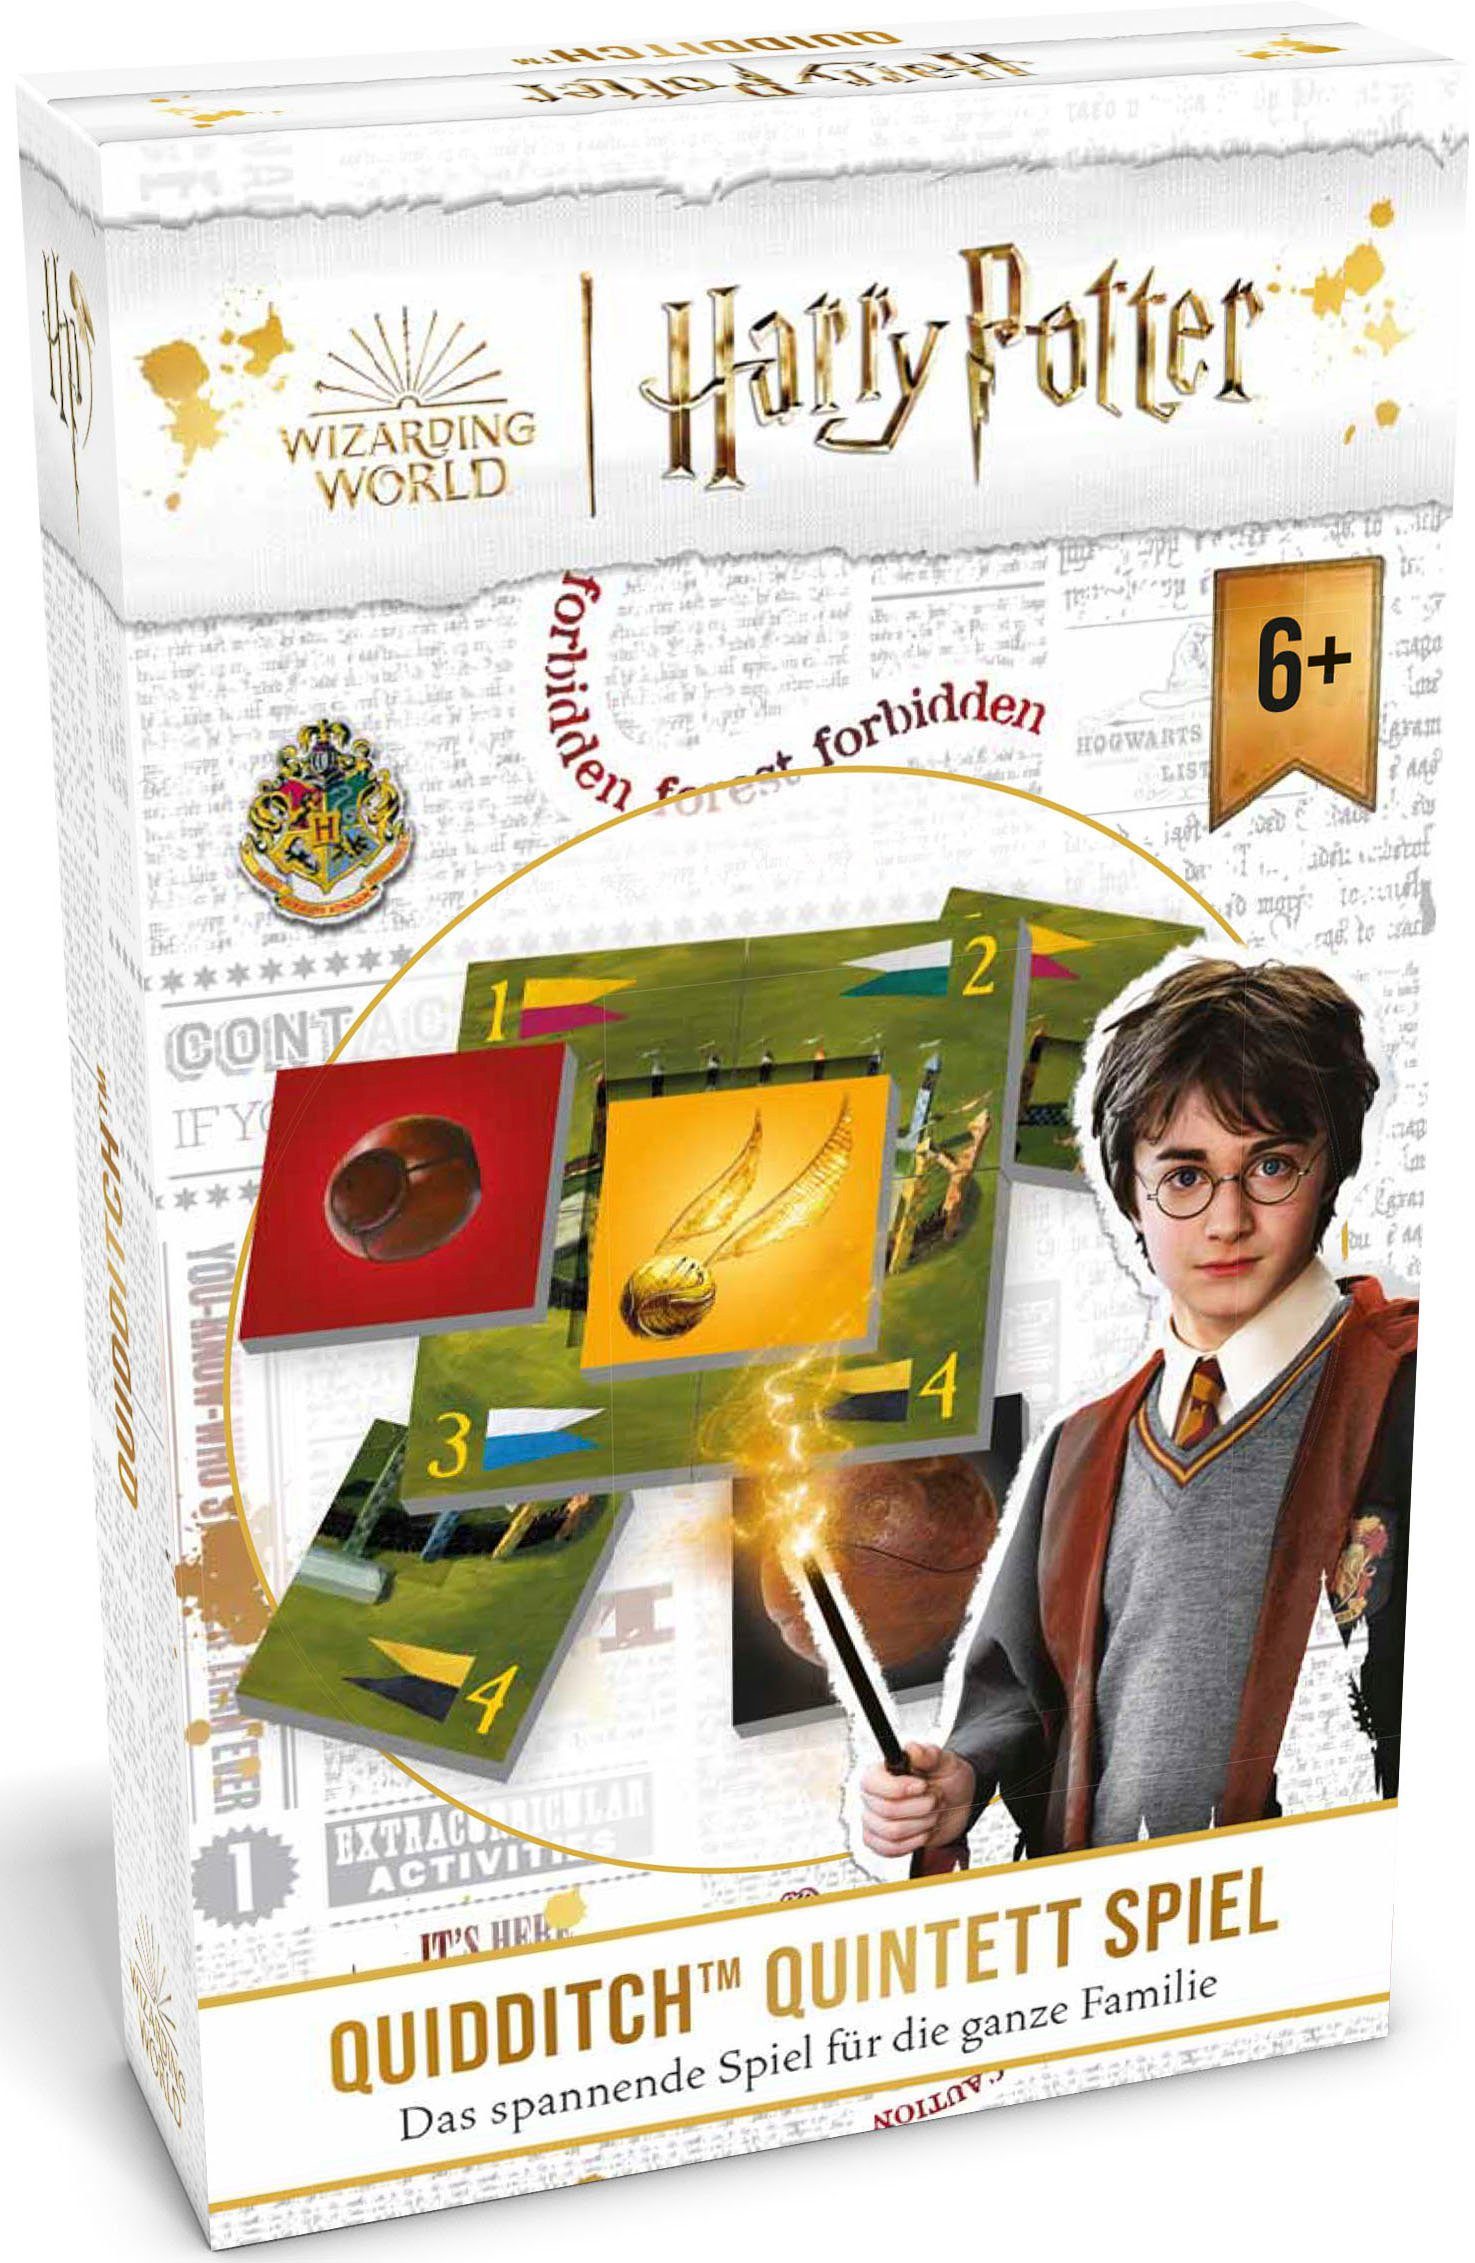 Spiel, Quintett Spiel, Europe Potter - in Harry Made Quidditch Noris